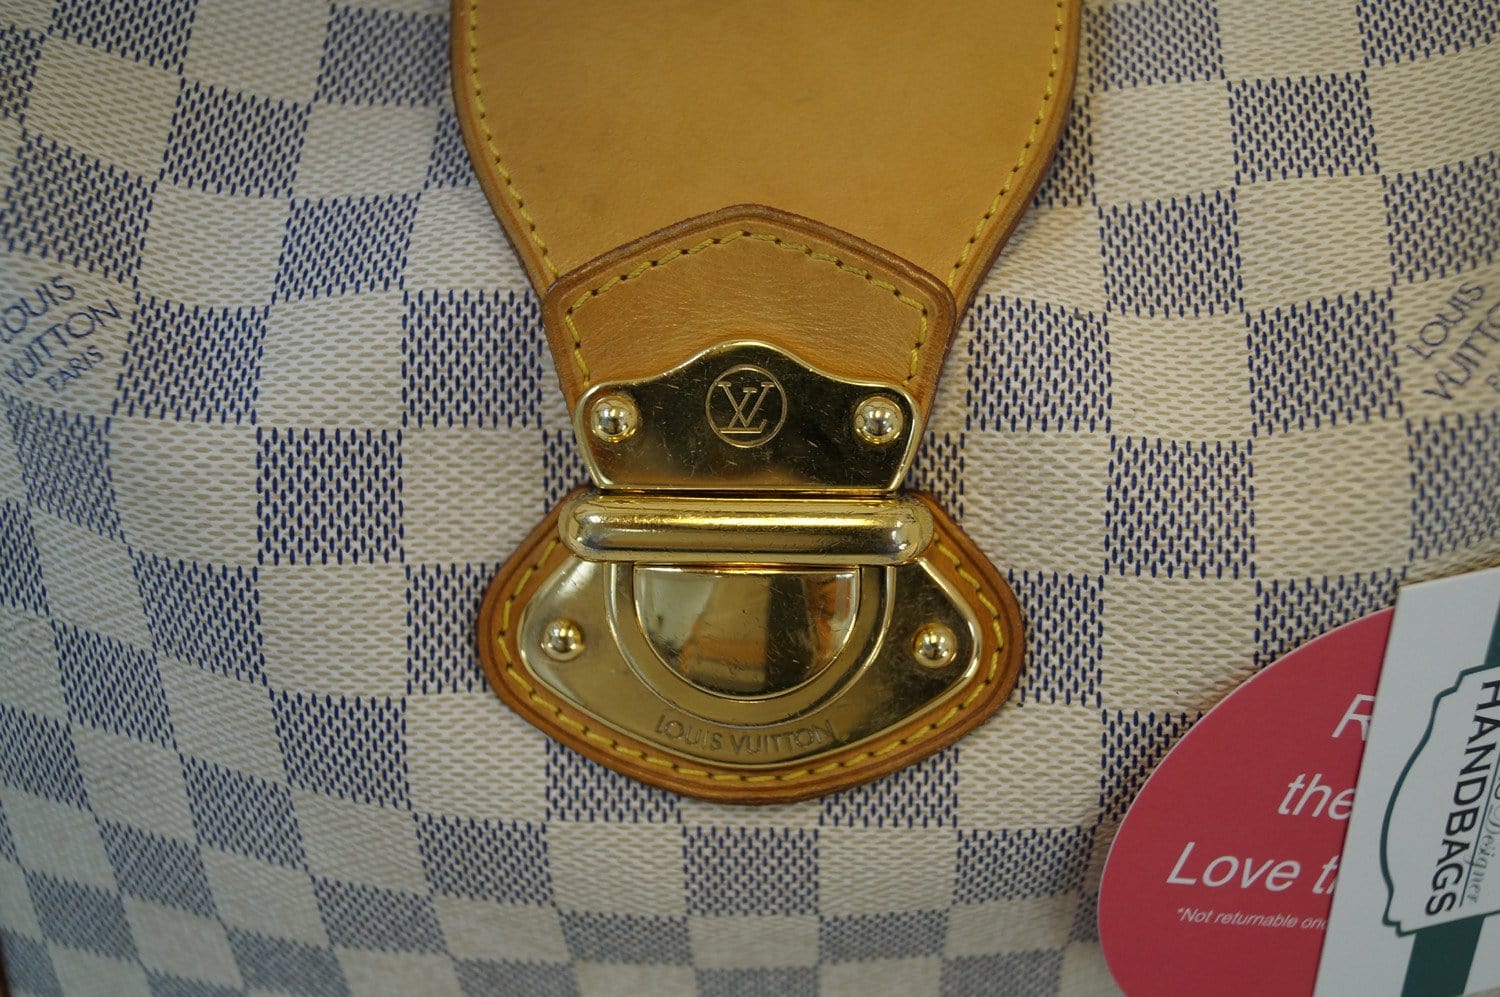 Preloved Authentic Louis Vuitton Damier Azur Stresa PM Shoulder